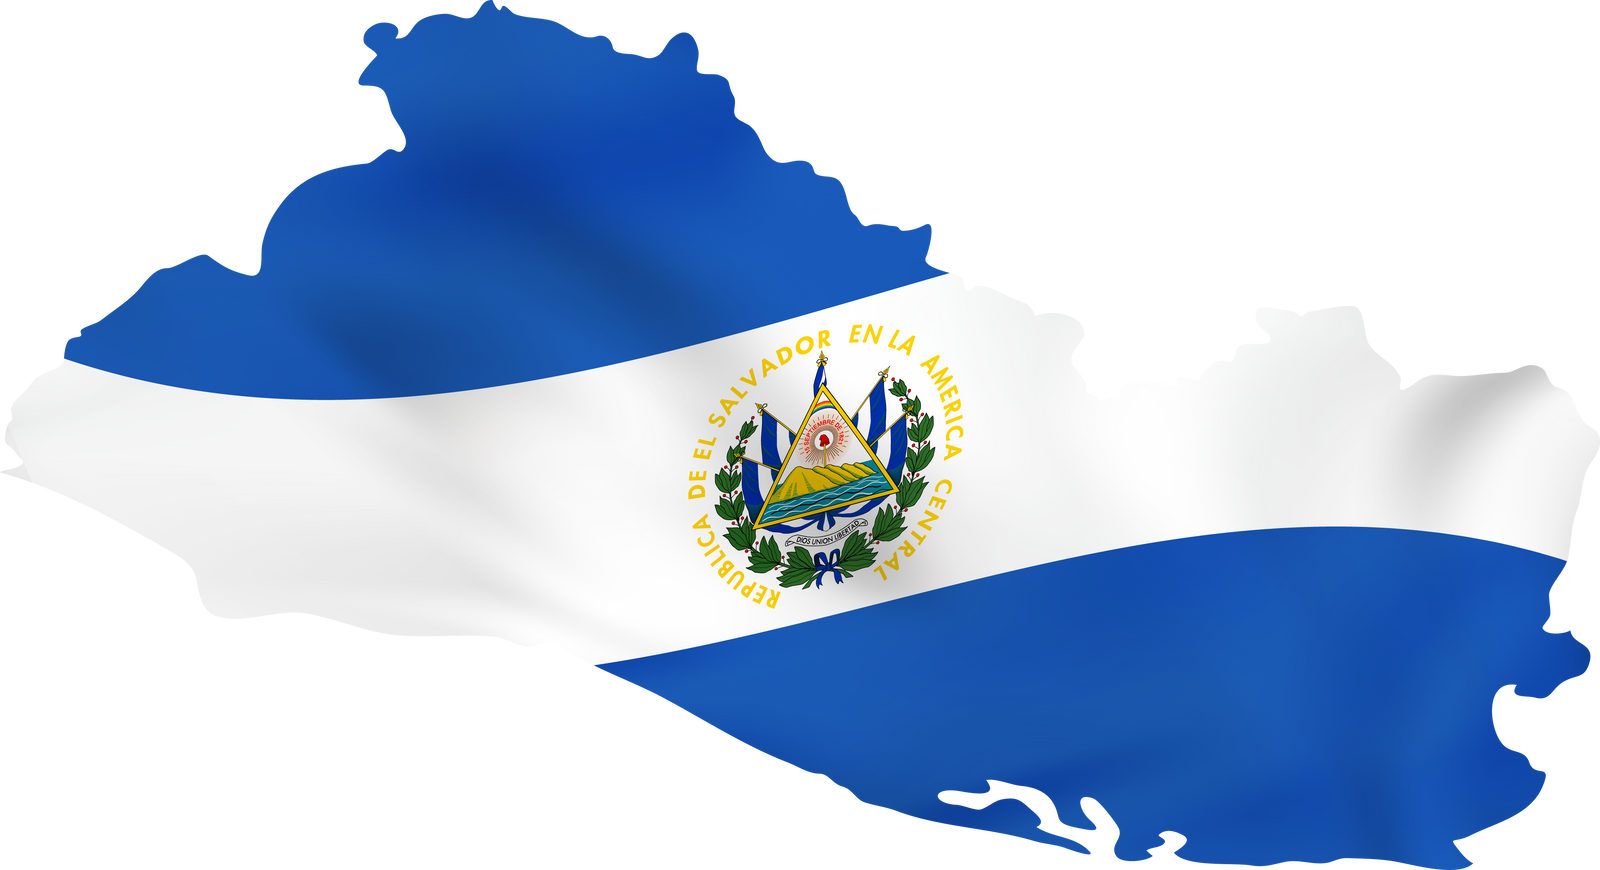 El Salvador with waving flag.